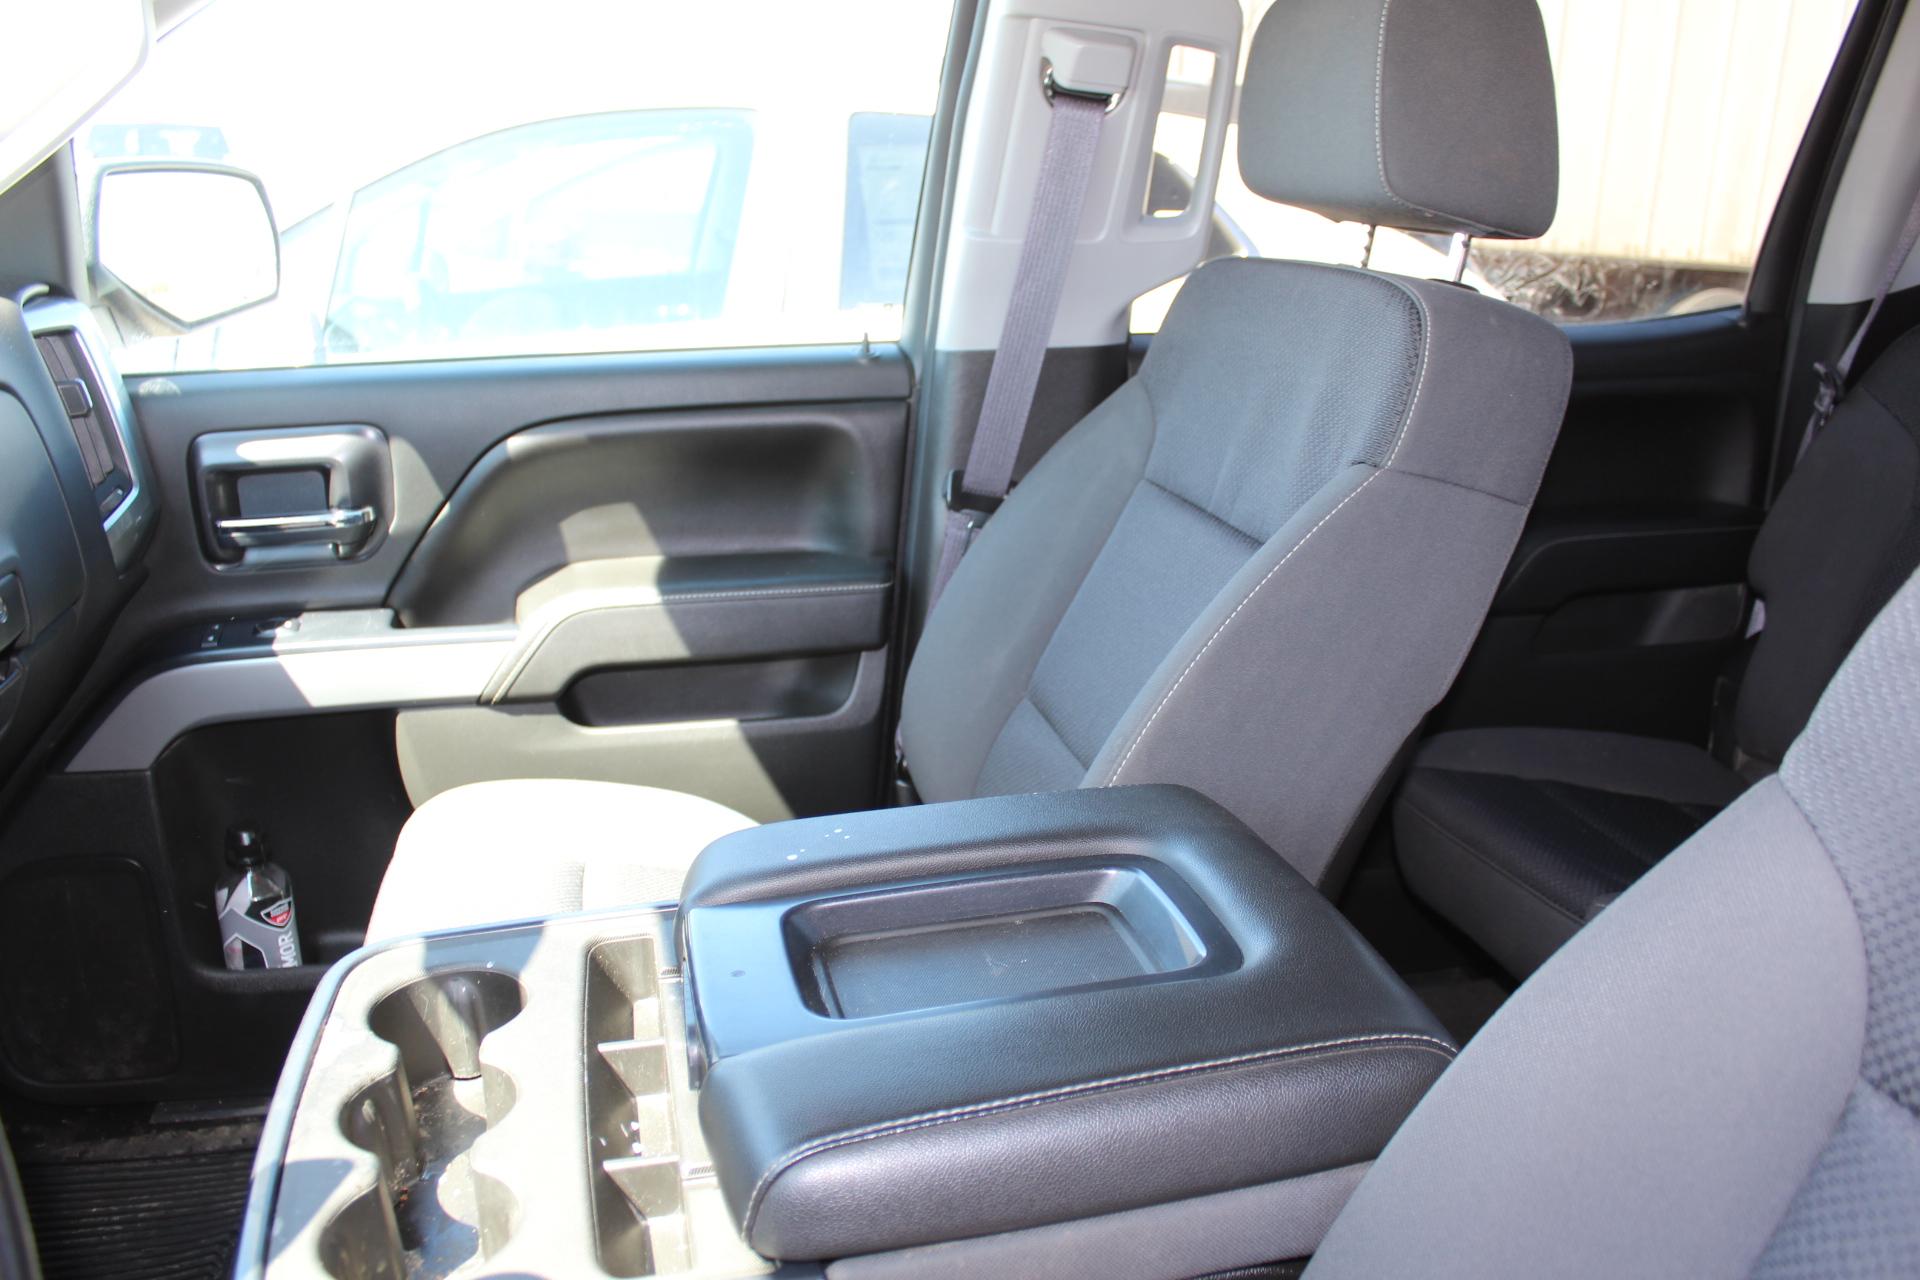 2015 Chevrolet Silverado Z71 1500, 5.3L Flex Fuel, Auto 4x4, Auto Trans, 4 Door, 5'8" Box